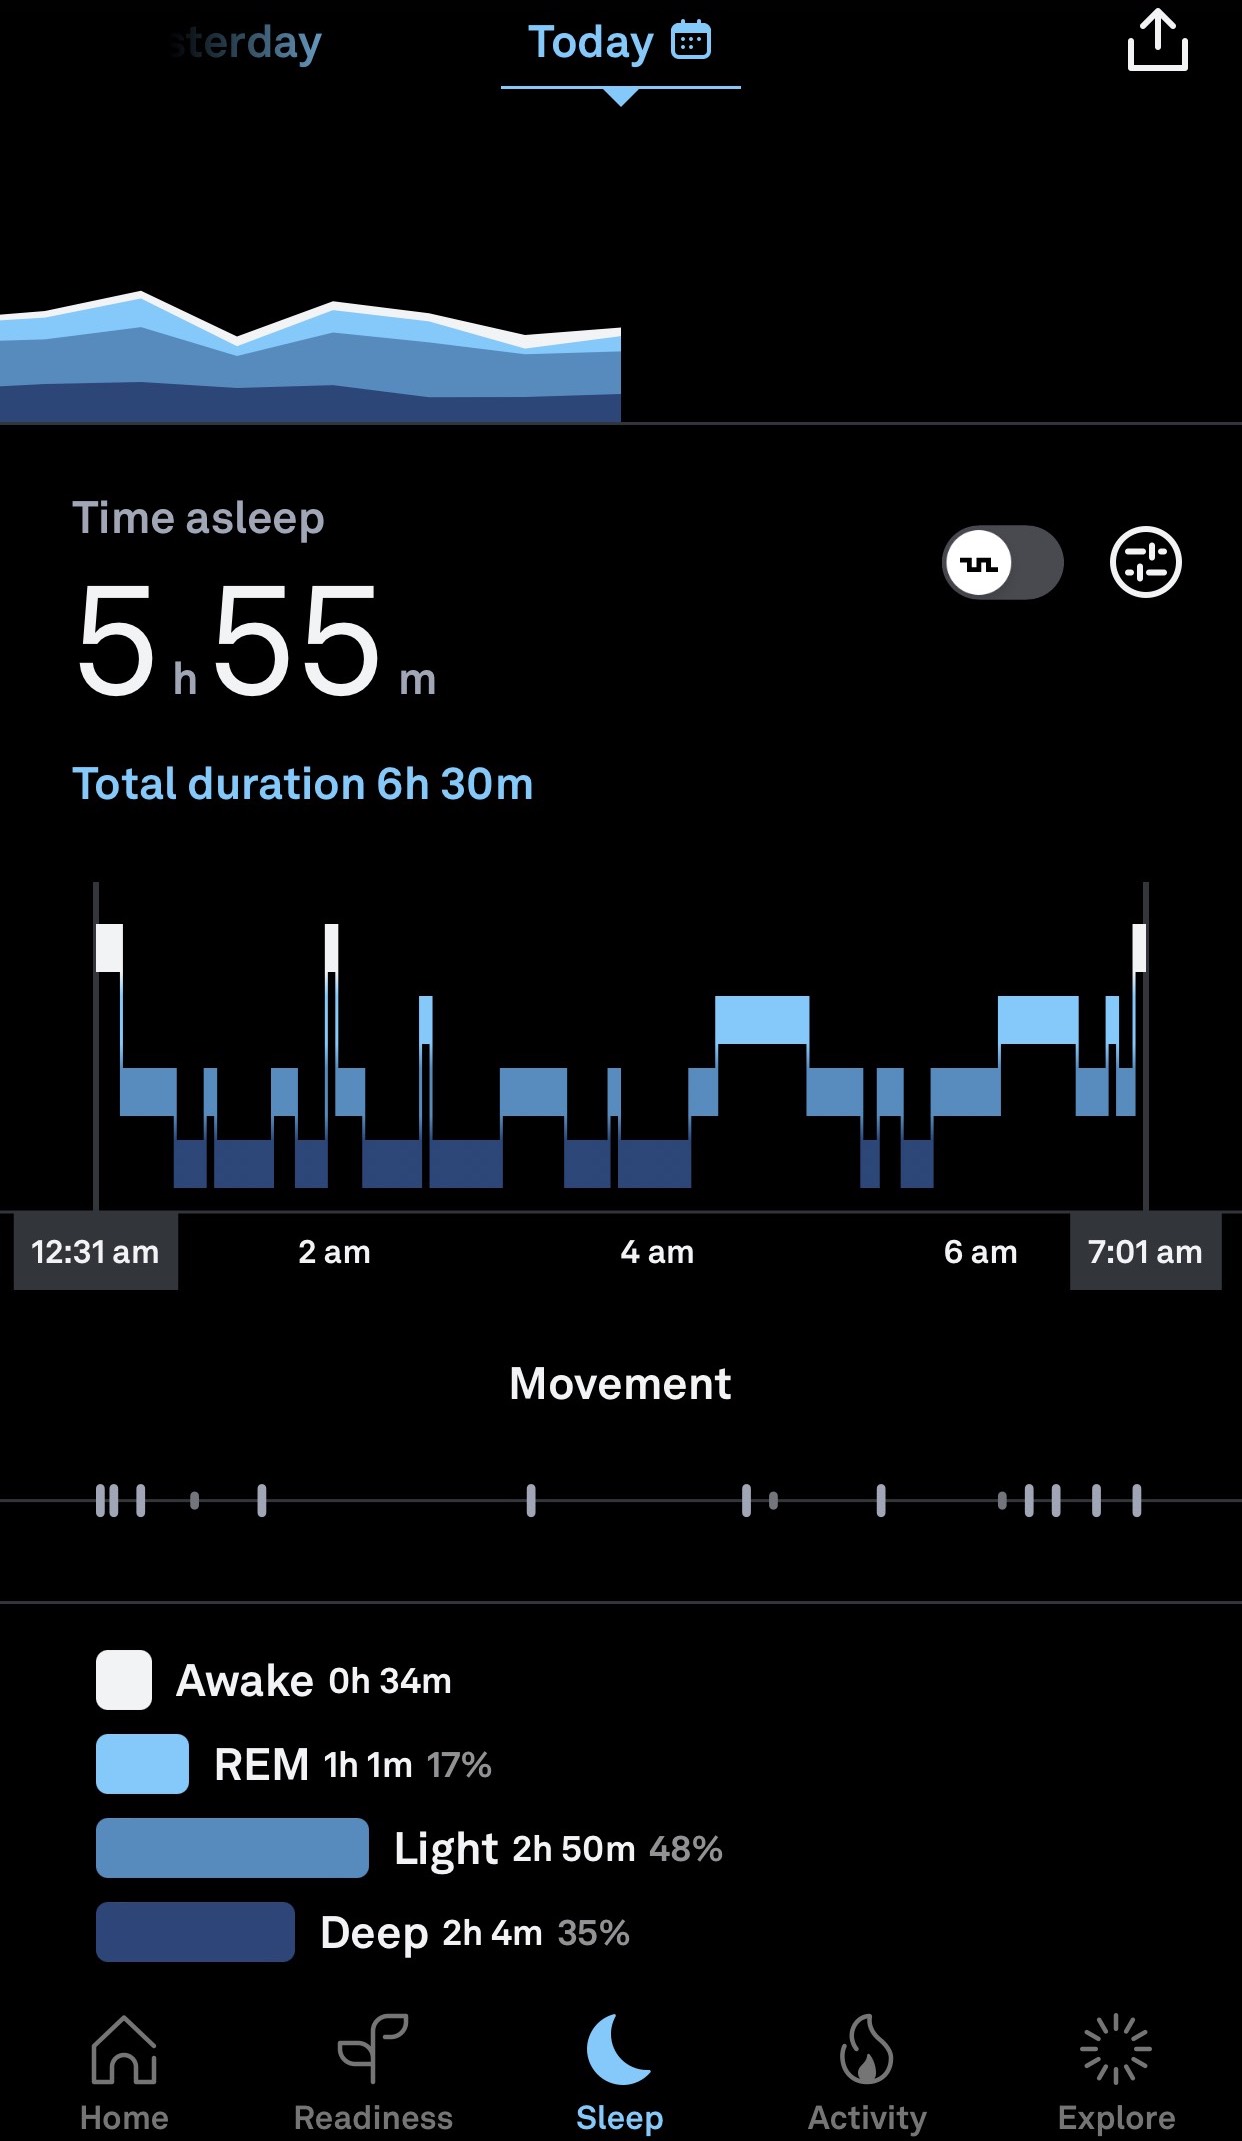 Ouraアプリの睡眠タブにヒプノグラム（睡眠段階のグラフ）が表示されています。 レム睡眠、浅い睡眠、深い睡眠が青の濃淡で表示されています。 覚醒時間は白で表示されています